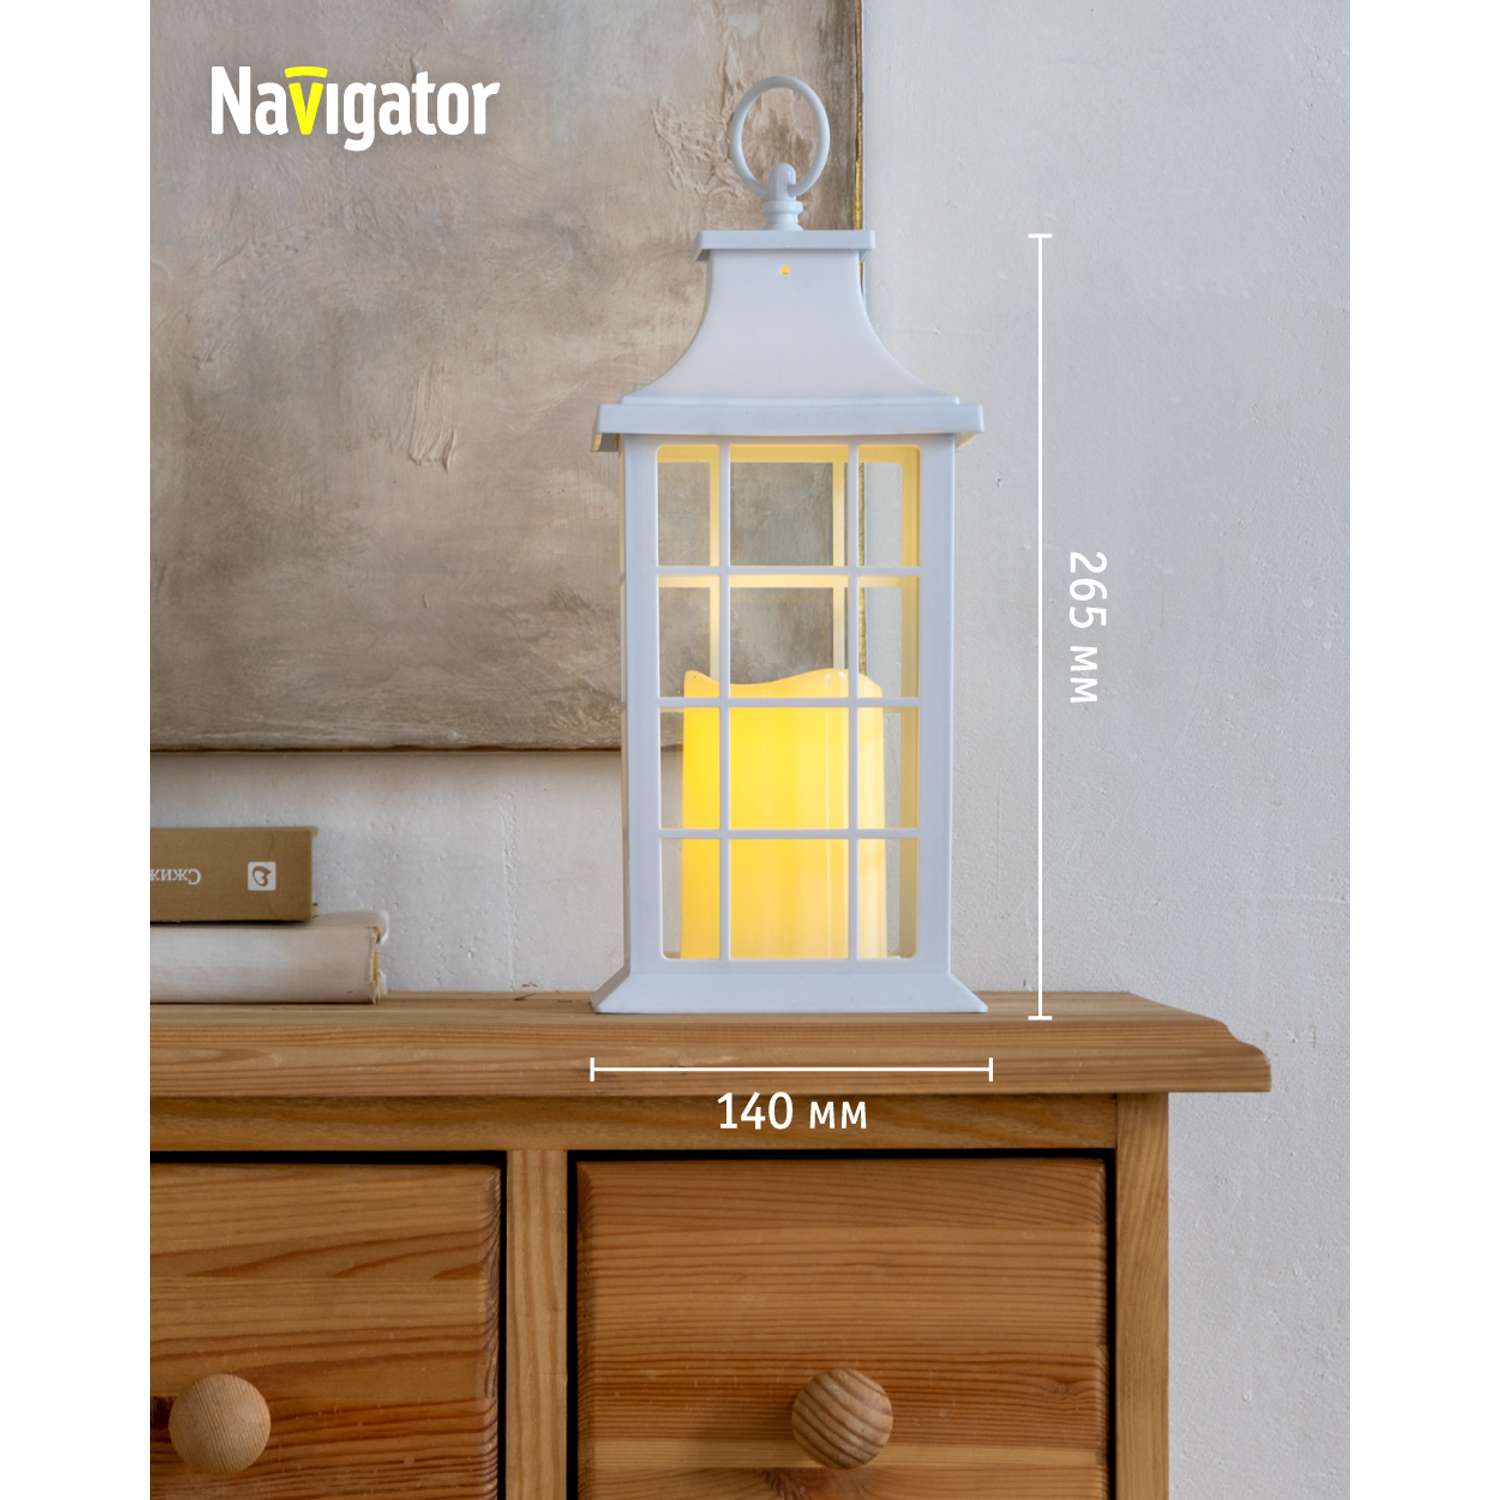 Декоративный светильник-ночник NaVigator светодиодный для детской комнаты узор белая решетка - фото 3